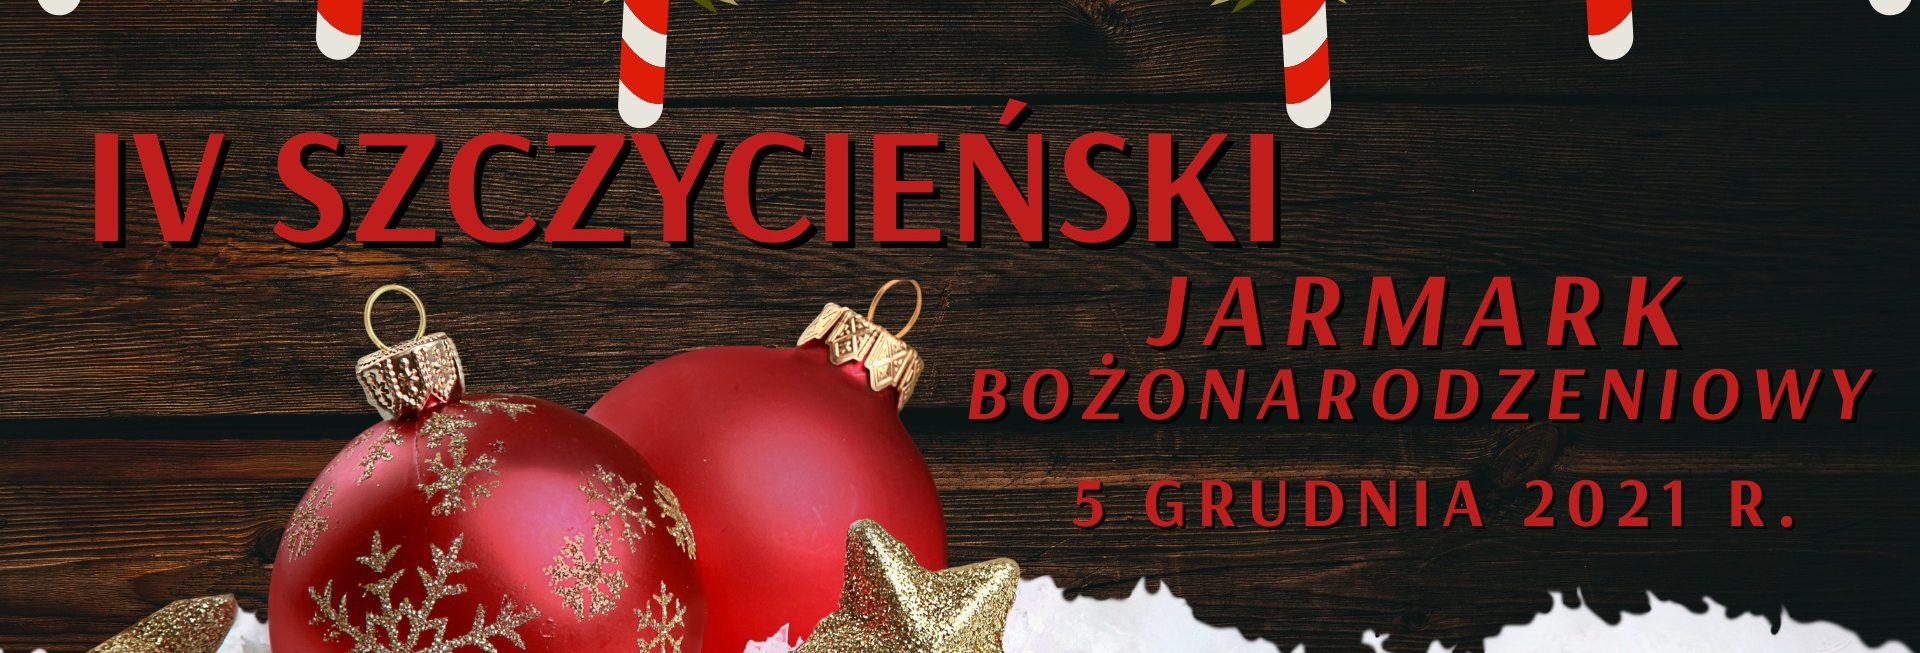 Plakat graficzny zapraszający do Szczytna na cykliczną imprezę świąteczną Szczycieński Jarmark Bożonarodzeniowy - Szczytno 2021.